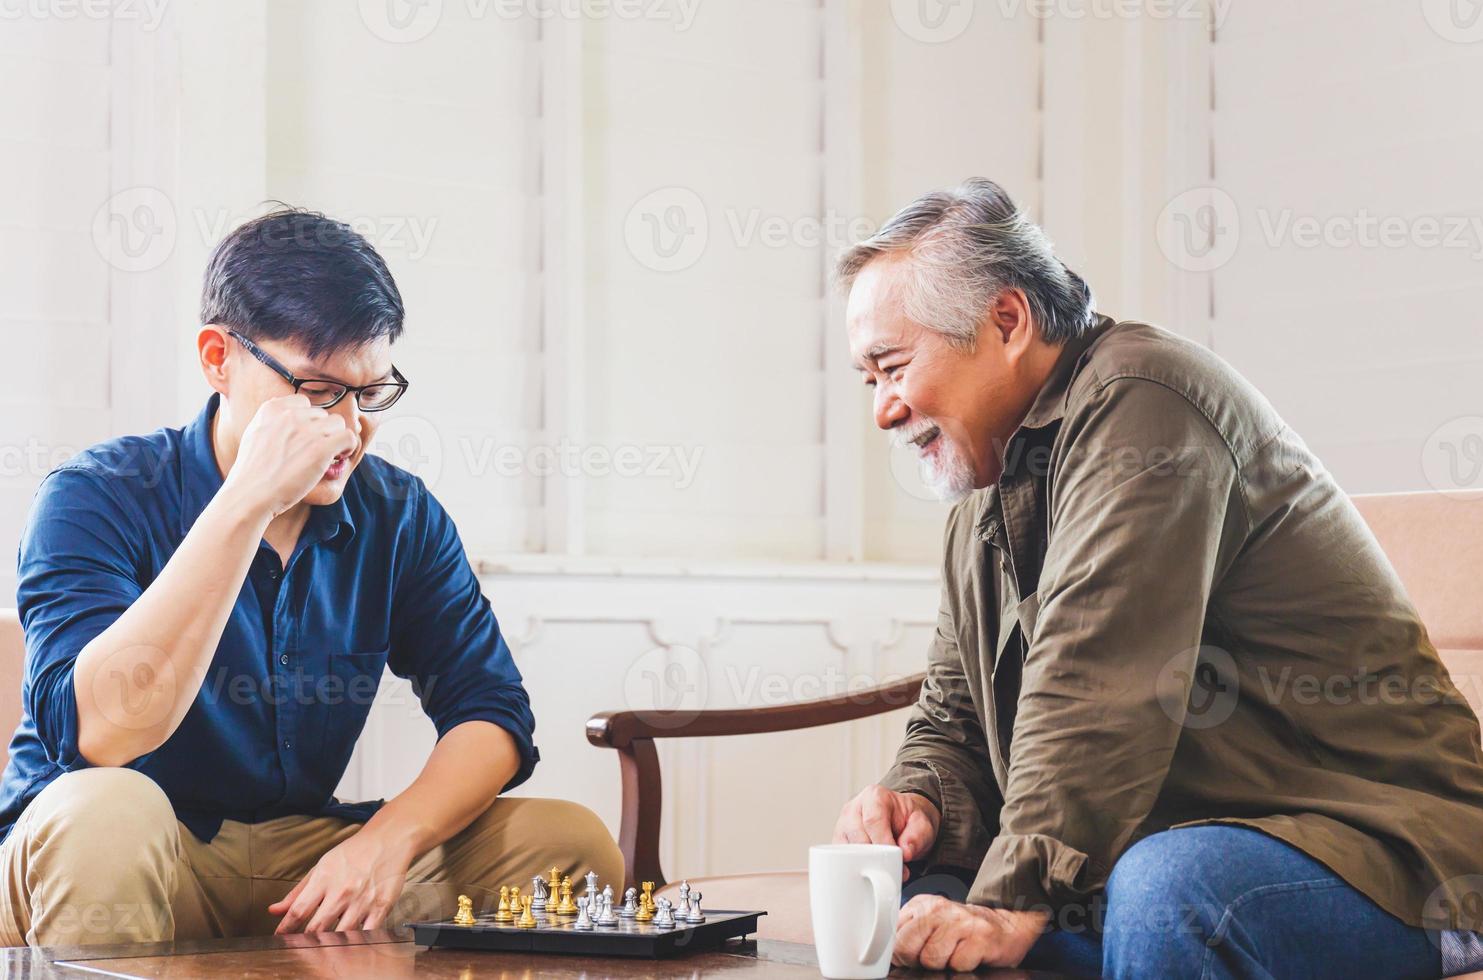 filho de meia idade e pai asiático sênior jogando xadrez na sala de estar, conceitos de família asiática de felicidade foto